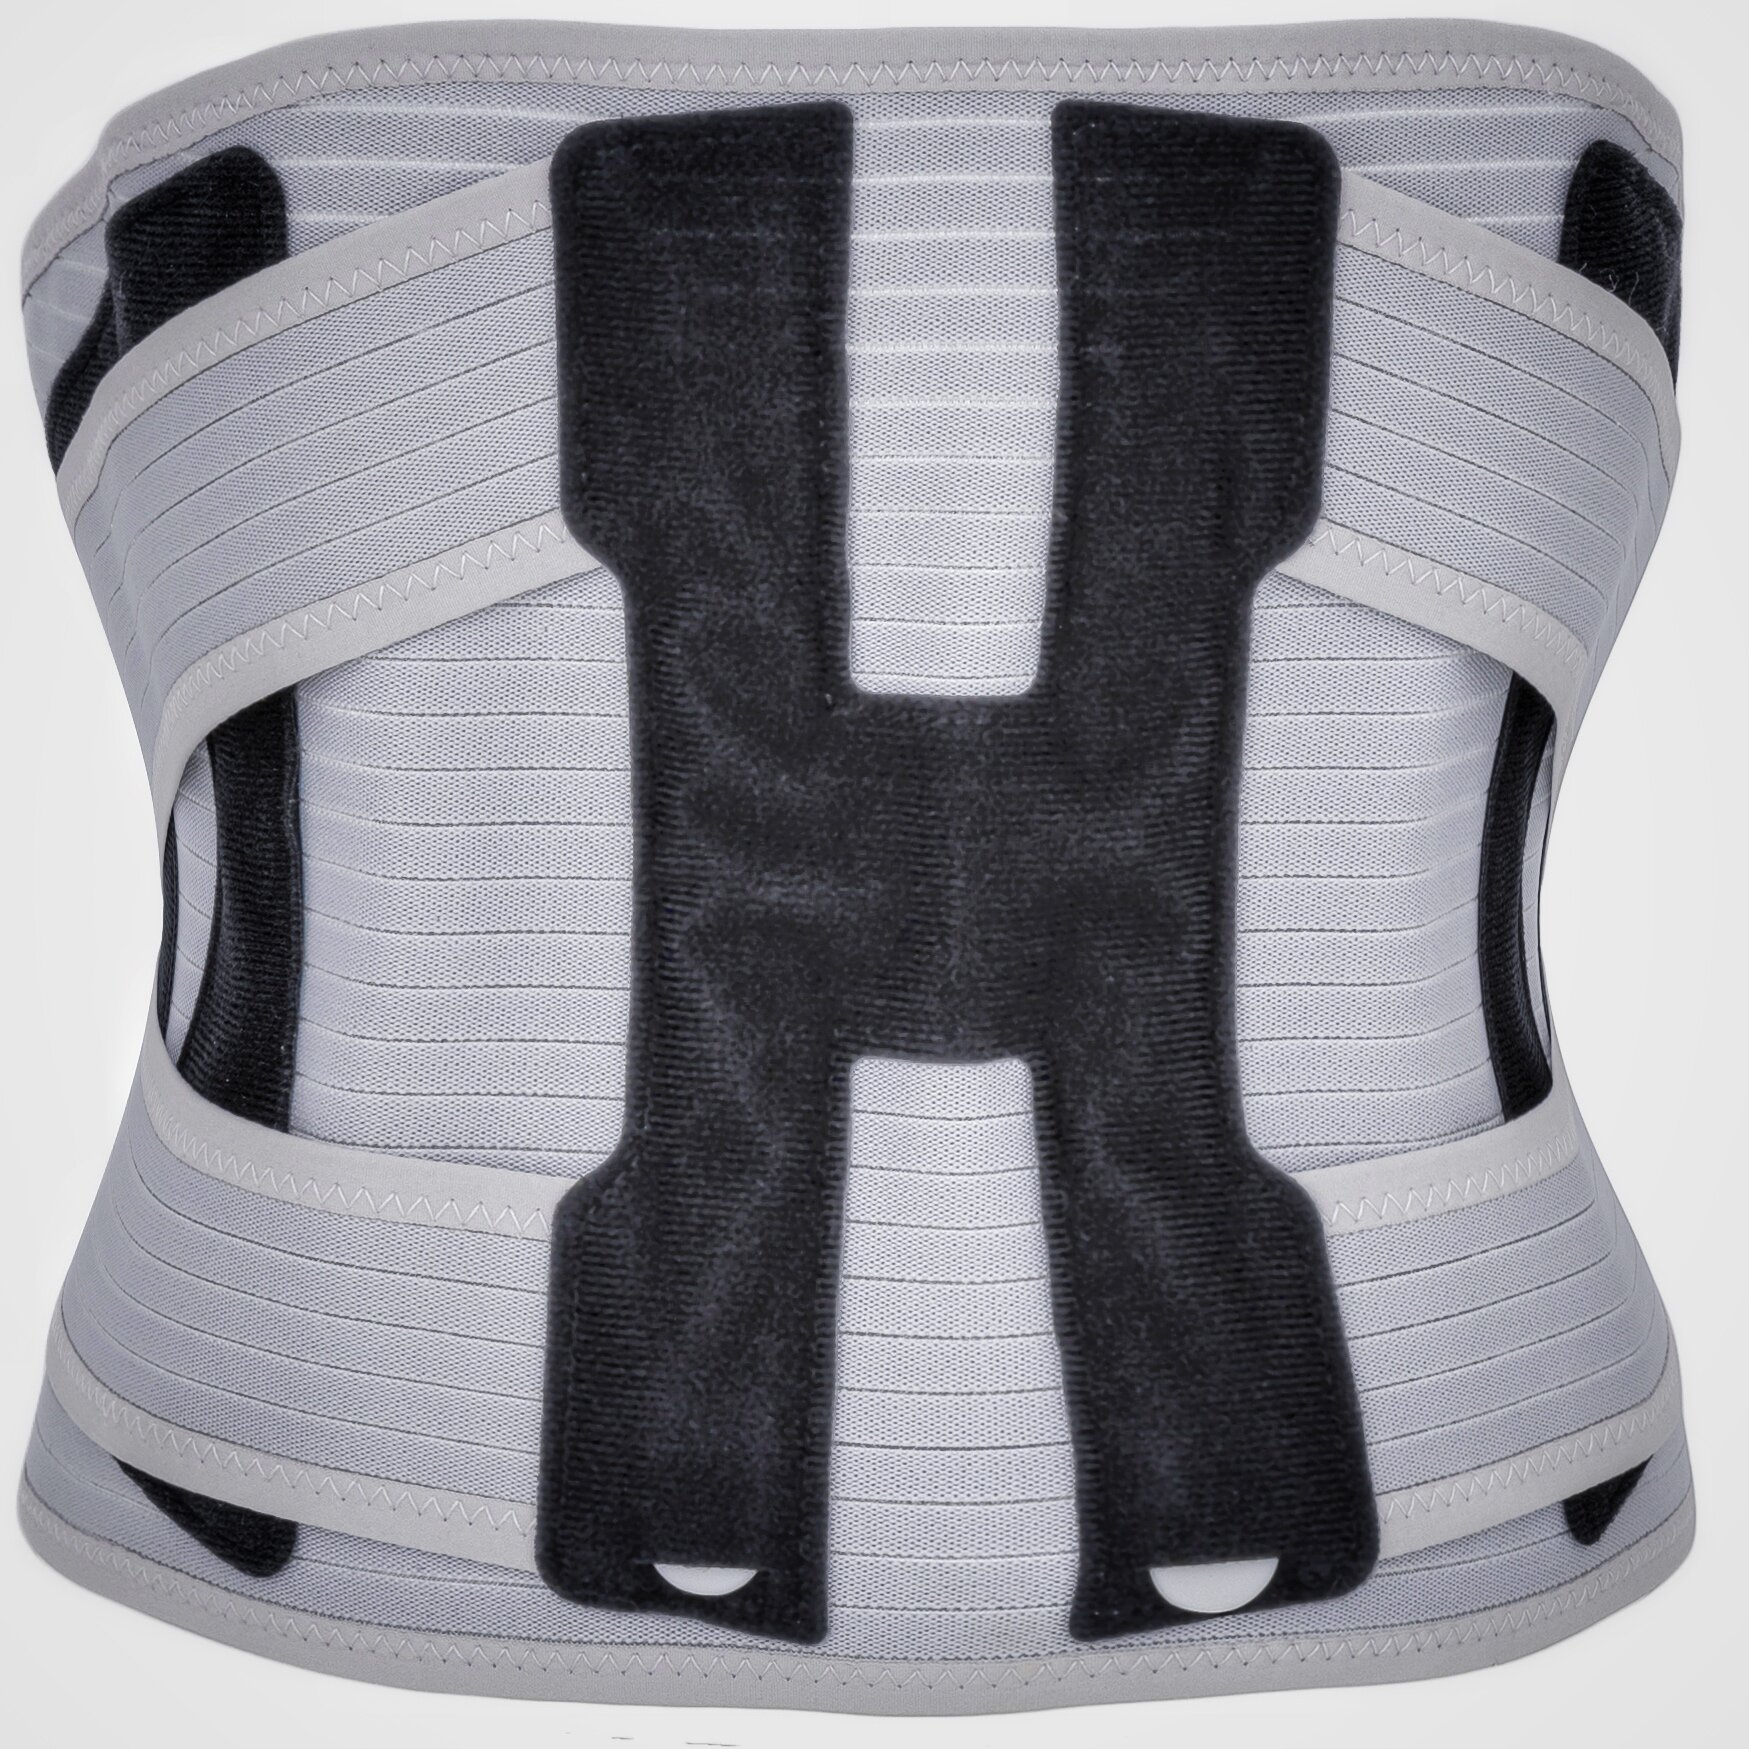 Корсет для спины ортопедический поясничный с 2-х ступенчатой степенью фиксации - р. M-L ( обхват талии 86-101 см), серый